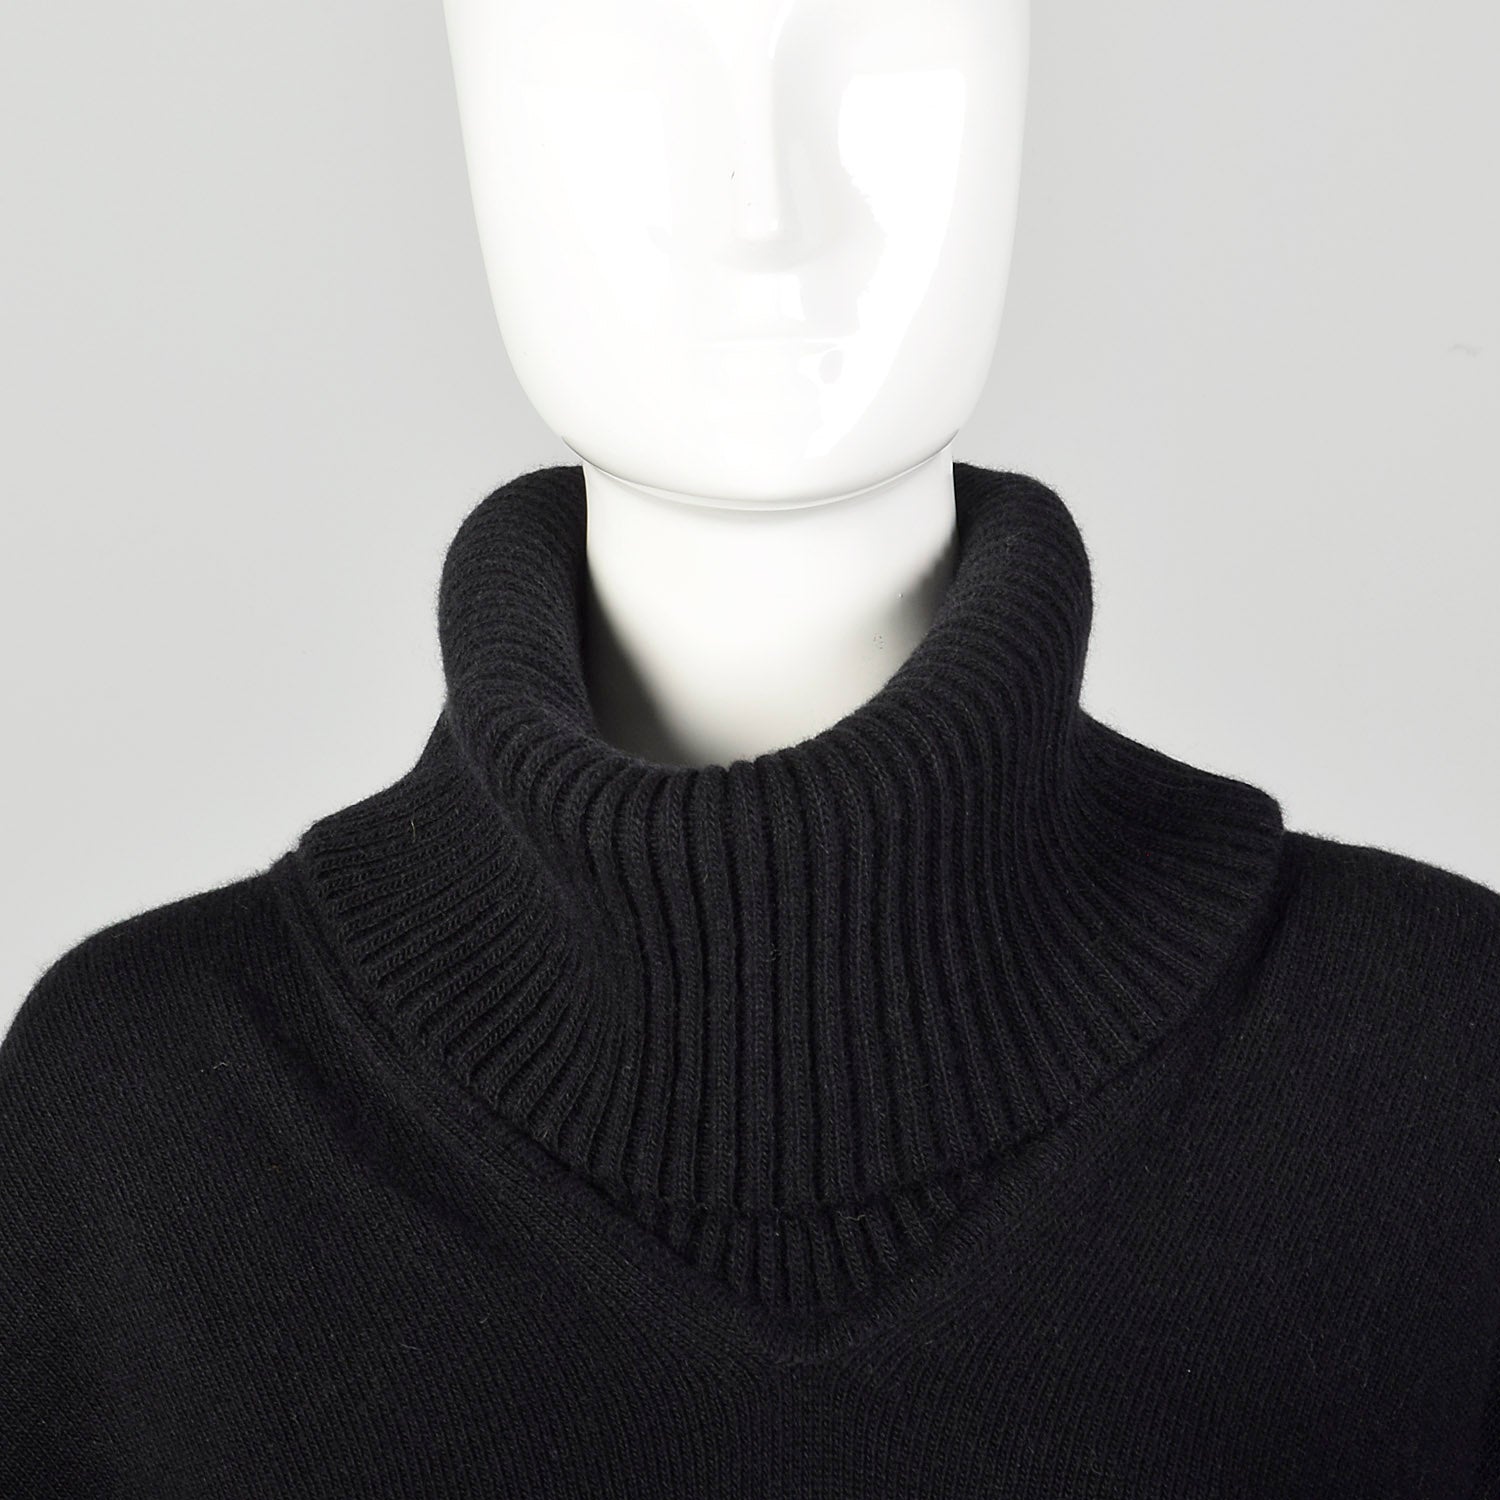 Giorgio Armani Black Cashmere Knit Poncho Sweater with Cowl Neck